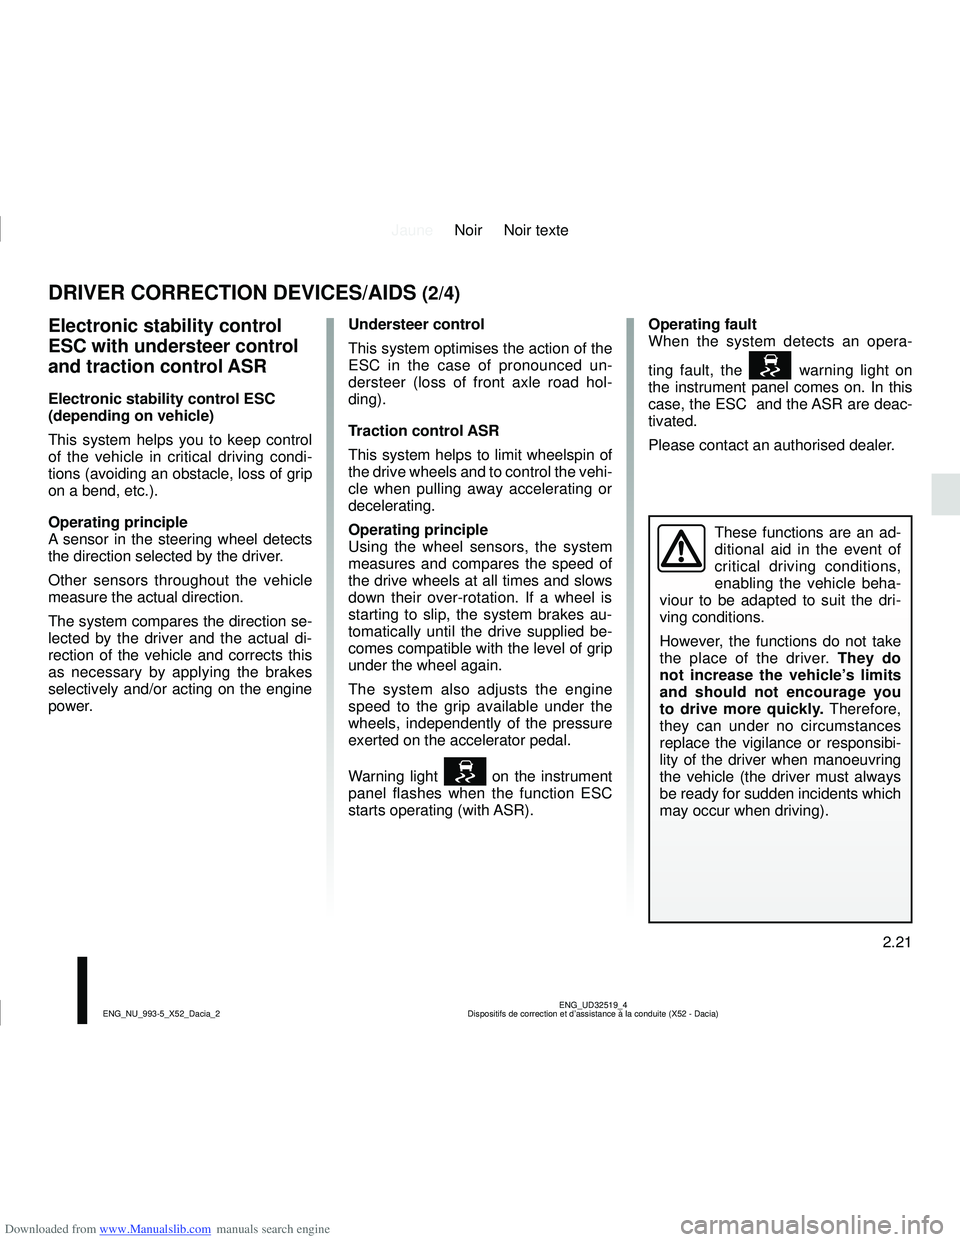 DACIA SANDERO 2019  Owners Manual Downloaded from www.Manualslib.com manuals search engine JauneNoir Noir texte
2.21
ENG_UD32519_4
Dispositifs de correction et d’assistance à la conduite (X52 - Da\
cia)
ENG_NU_993-5_X52_Dacia_2
DRI